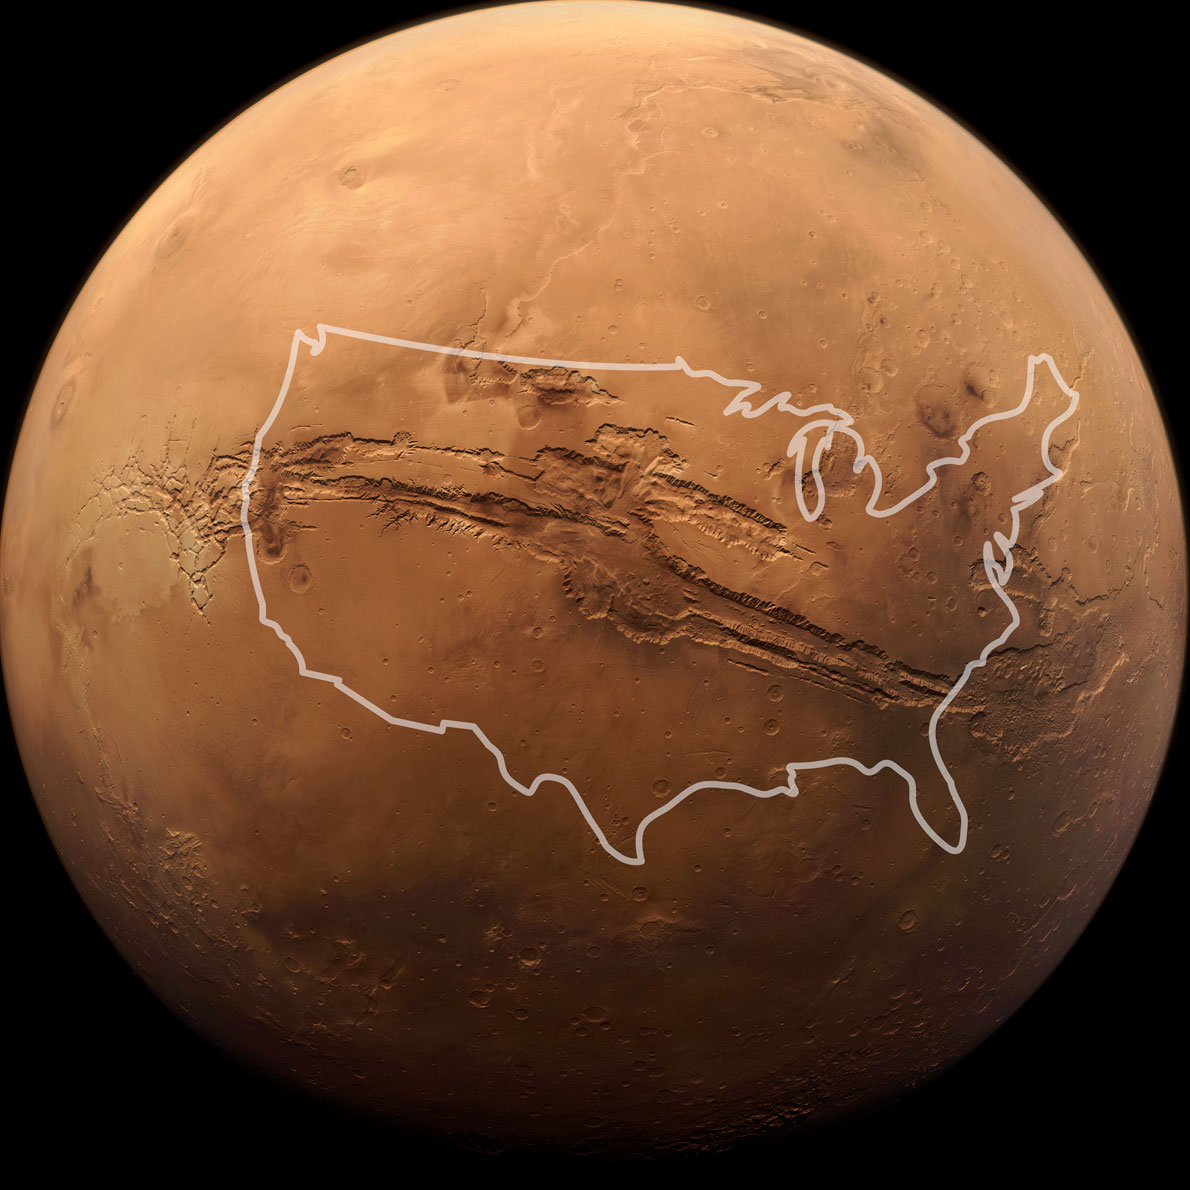 El planeta Marte sobre un fondo negro. Cuando el control deslizante se mueve hacia la izquierda, aparece una silueta de Estados Unidos sobre el gran cañón en la foto para mostrar lo grande que es. El cañón se ve más largo que Estados Unidos.